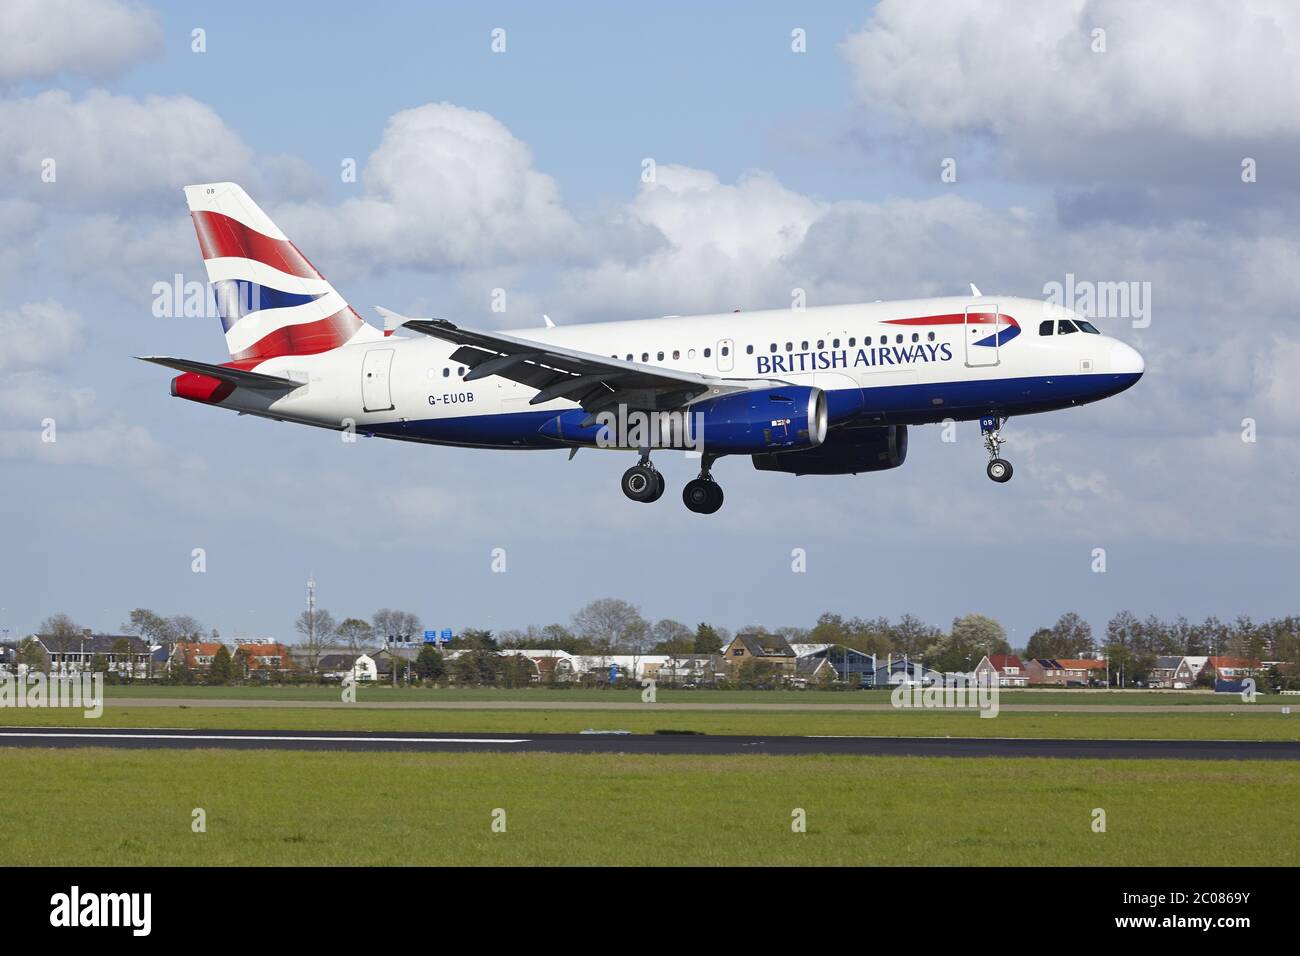 Aeroporto Schiphol di Amsterdam - Airbus A319 della British Airways atterra Foto Stock